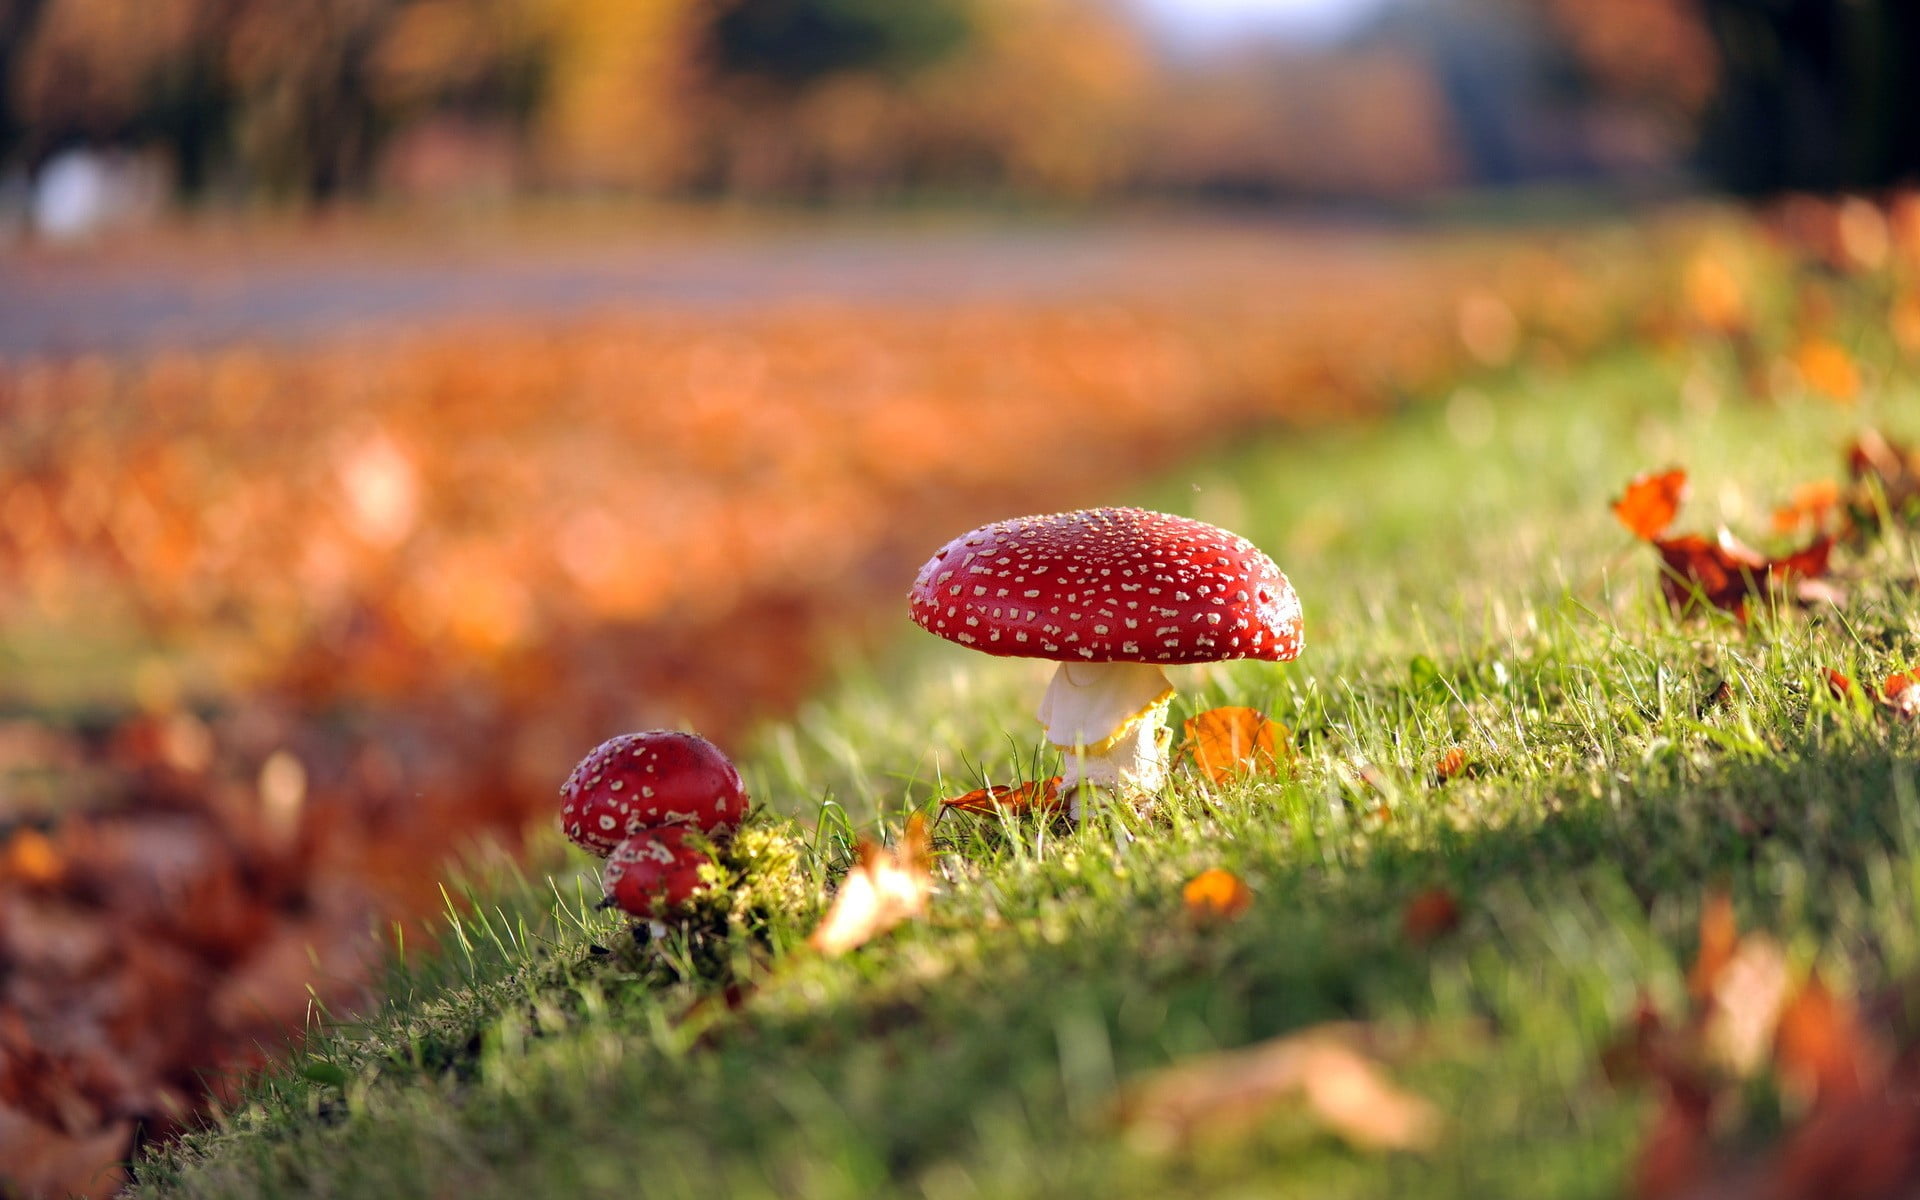 red mushroom, mushroom, grass, nature, depth of field